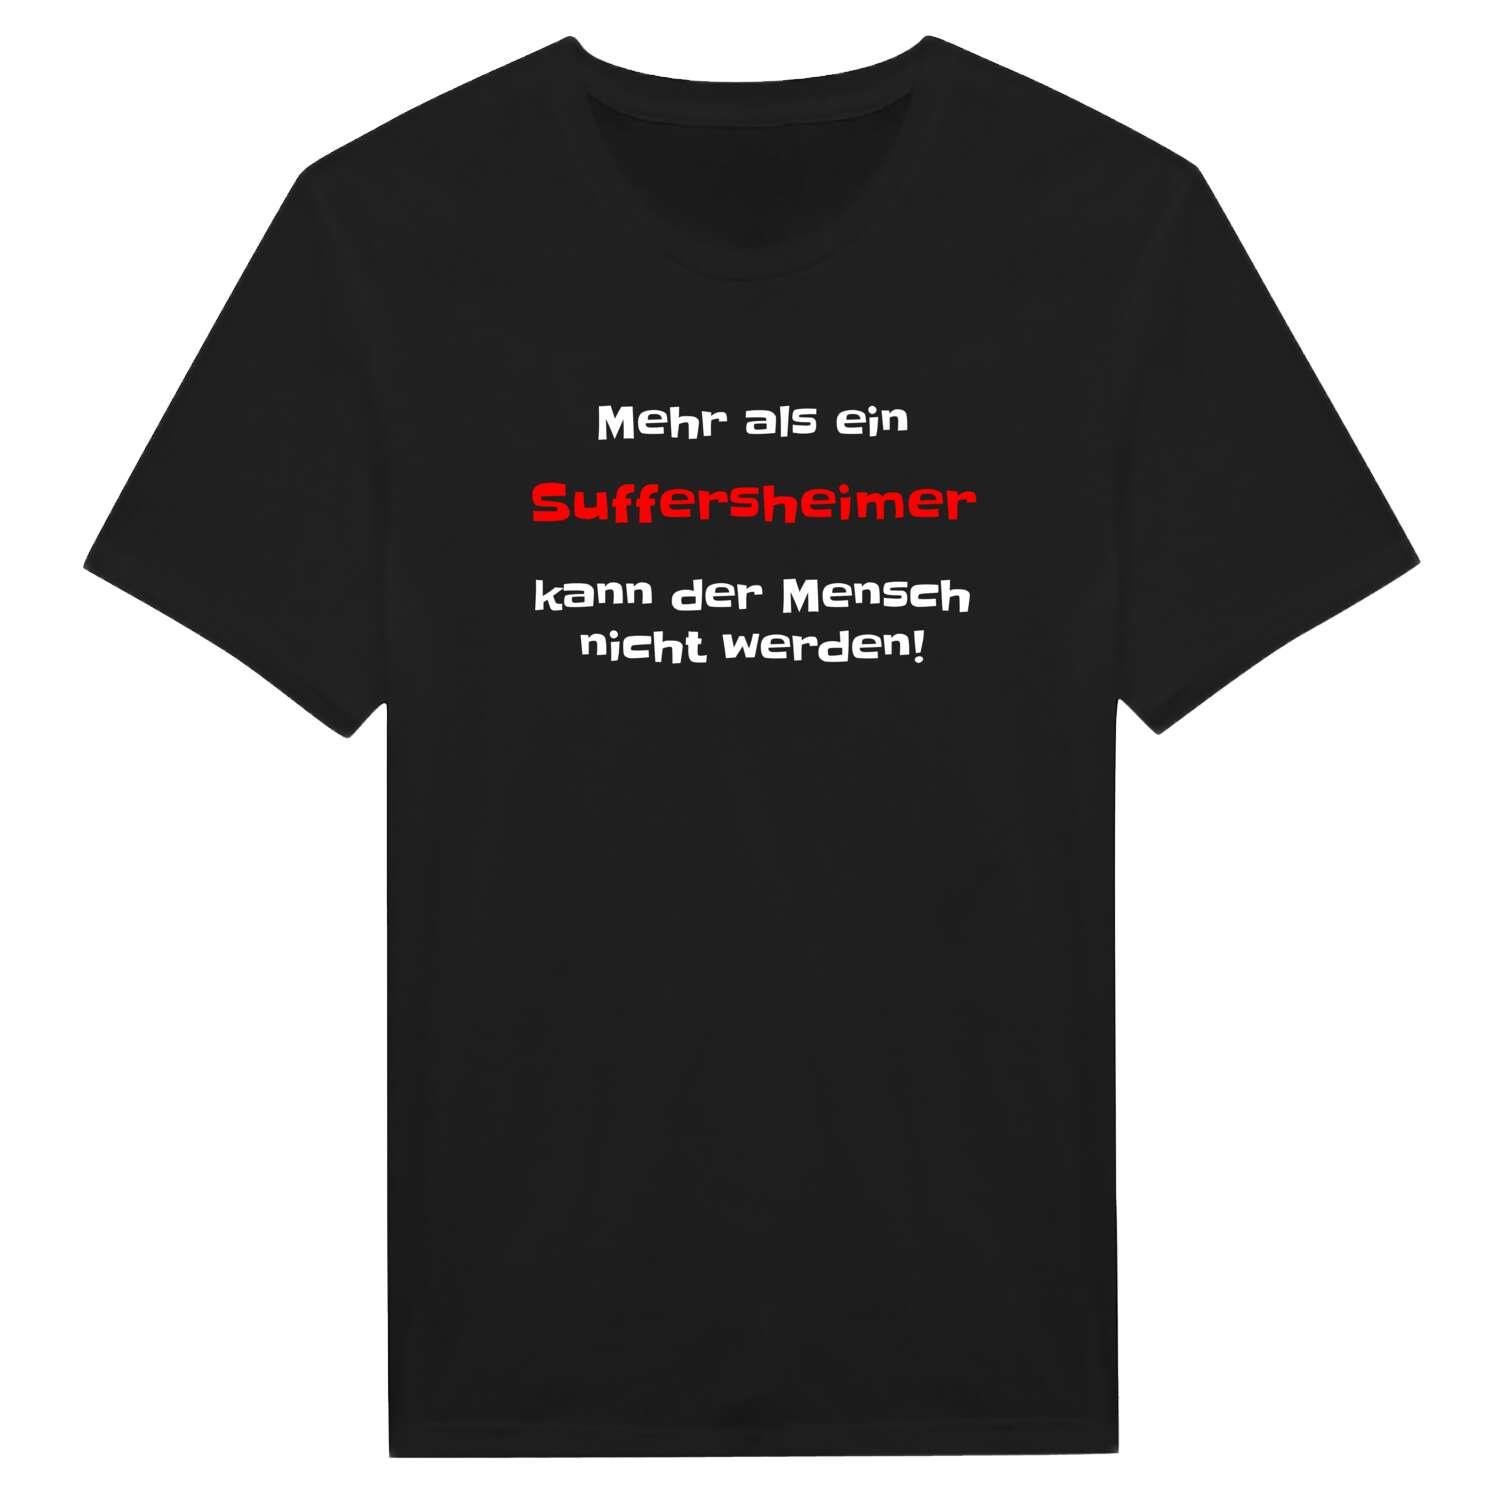 Suffersheim T-Shirt »Mehr als ein«